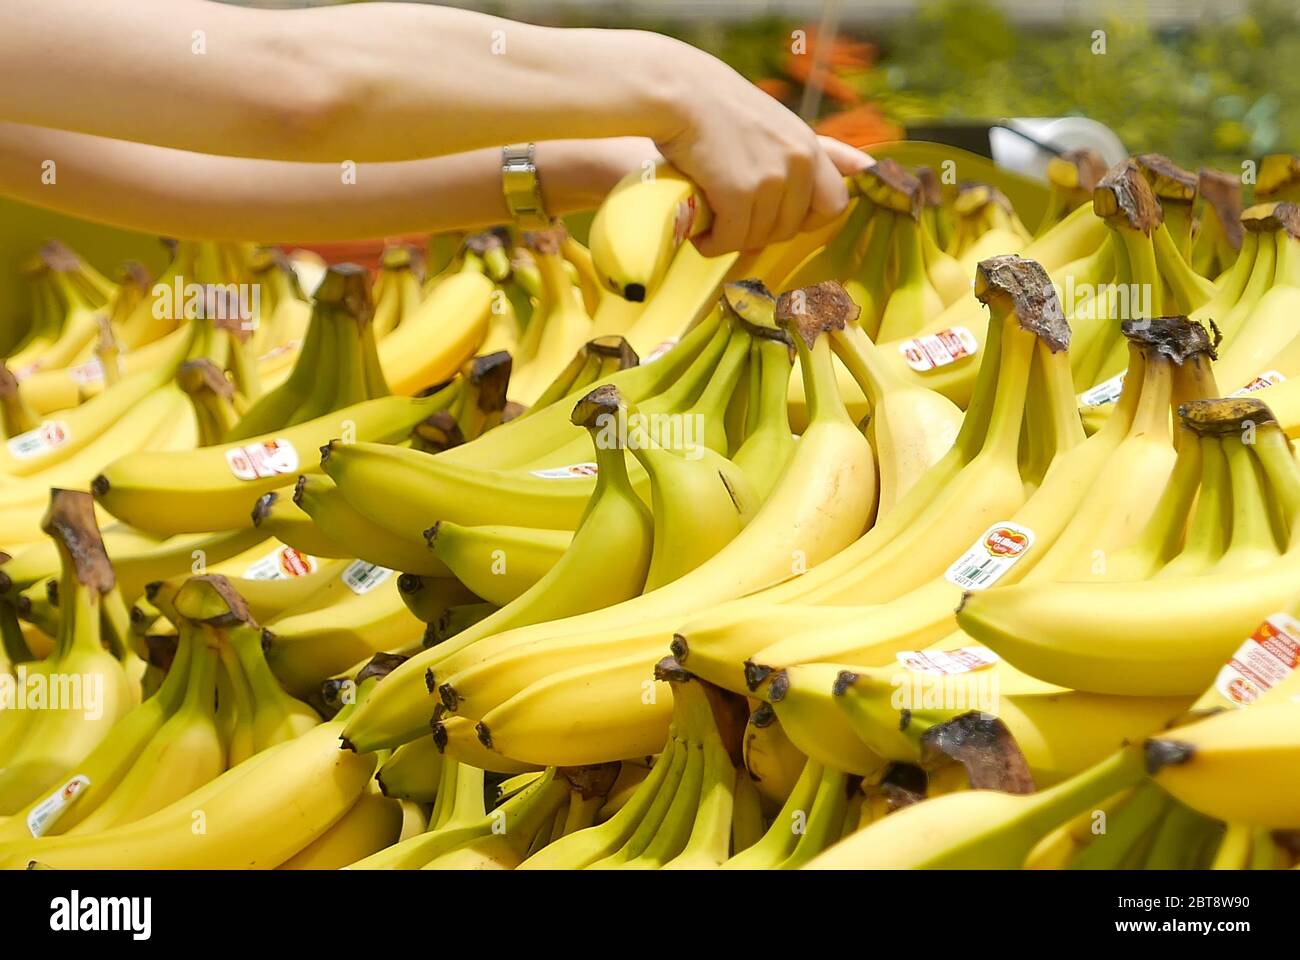 Mouvement de la main de femme cueillant des bananes à l'intérieur du magasin supérieur Banque D'Images